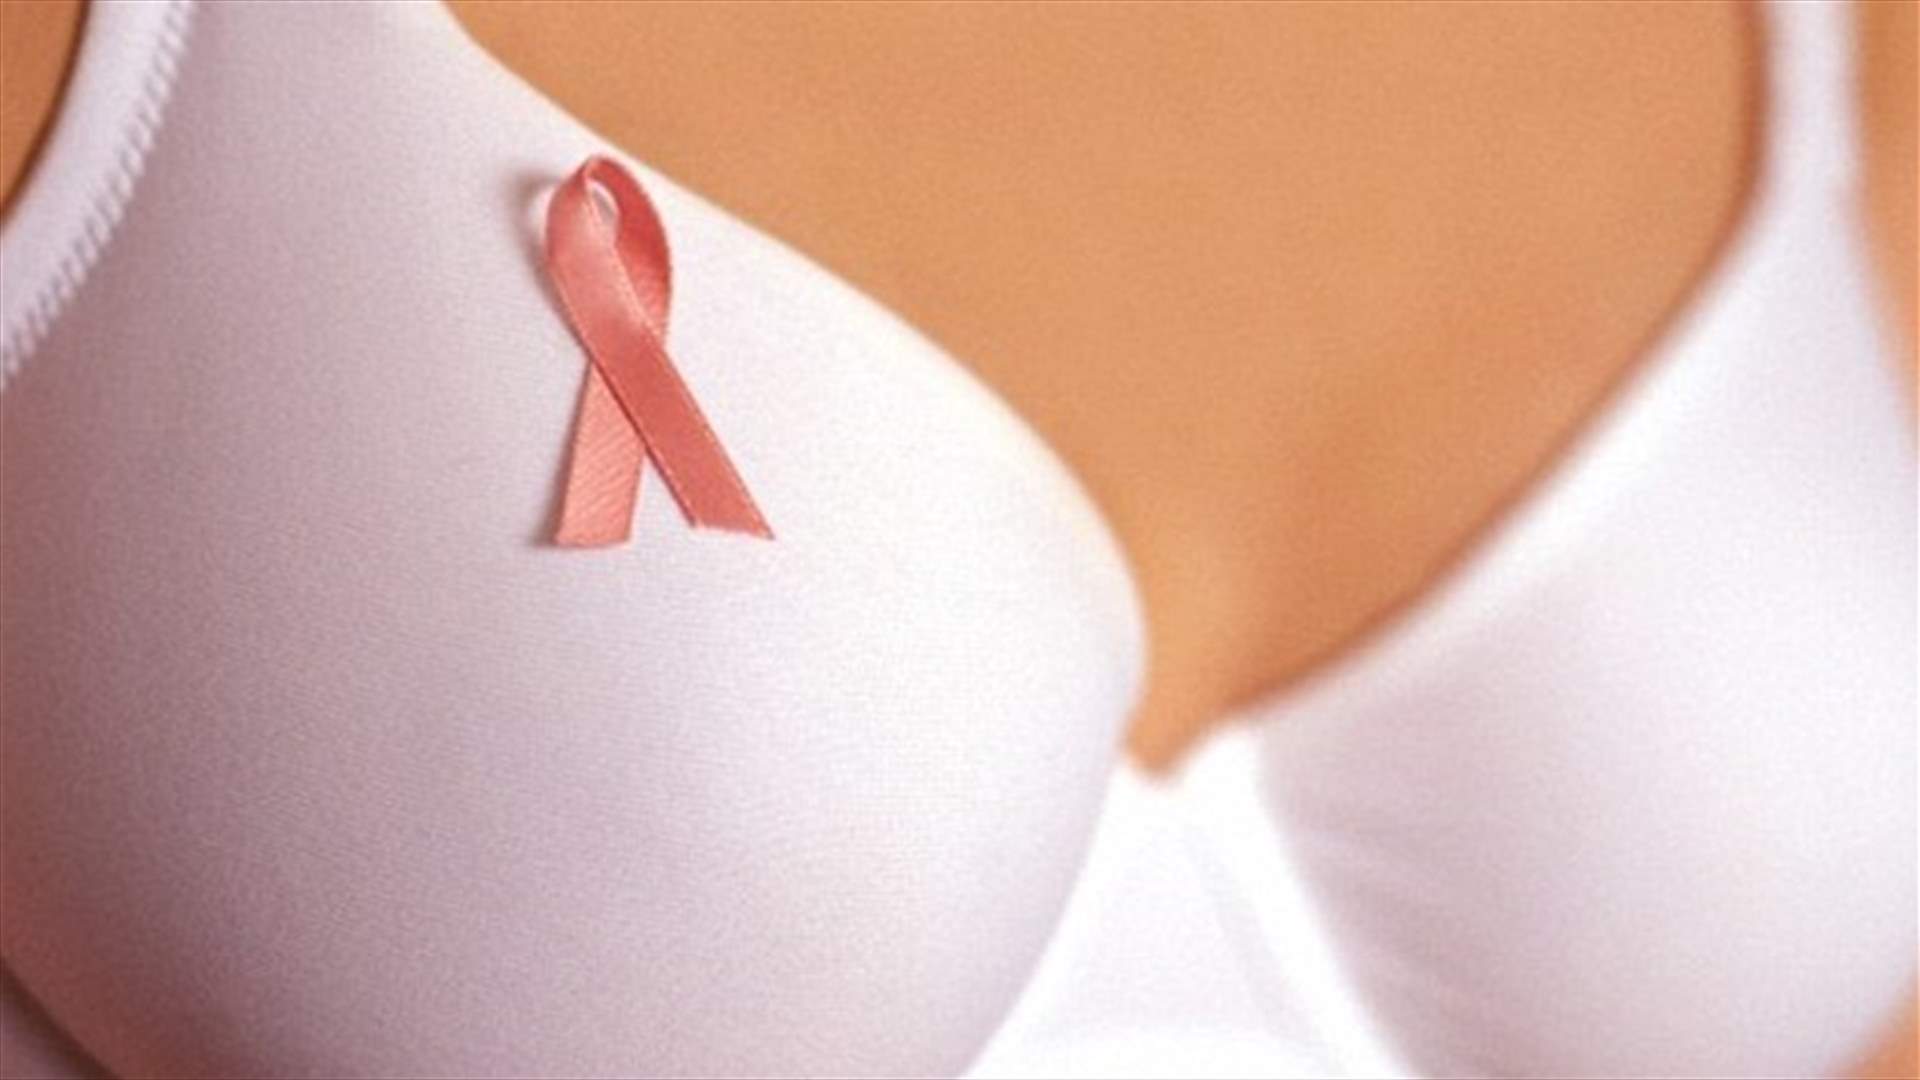 اكتشاف الخلل الذي يسبب سرطان الثديّ... قد يكون الحلّ لعلاجه